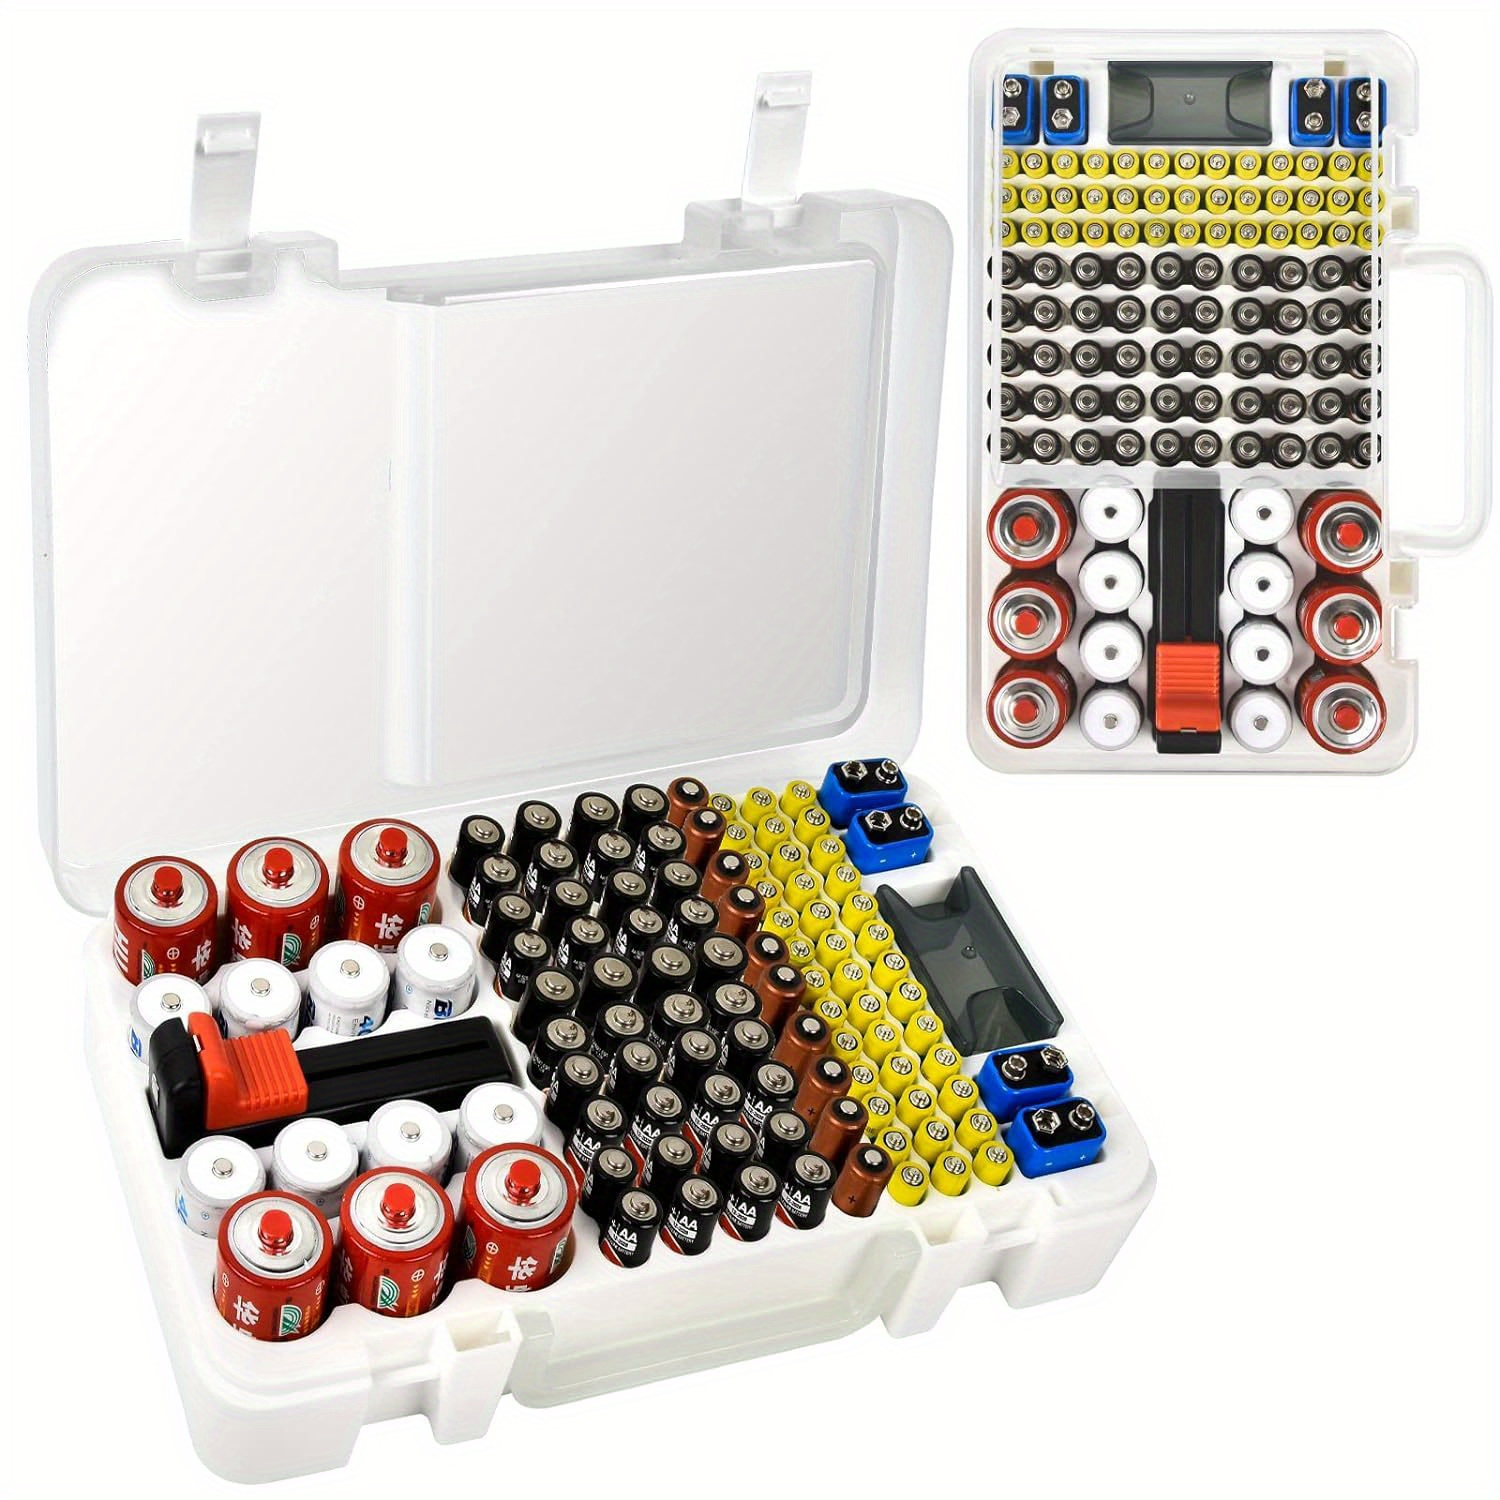 CR2032 or CR2025 button battery case holder organizer storage box